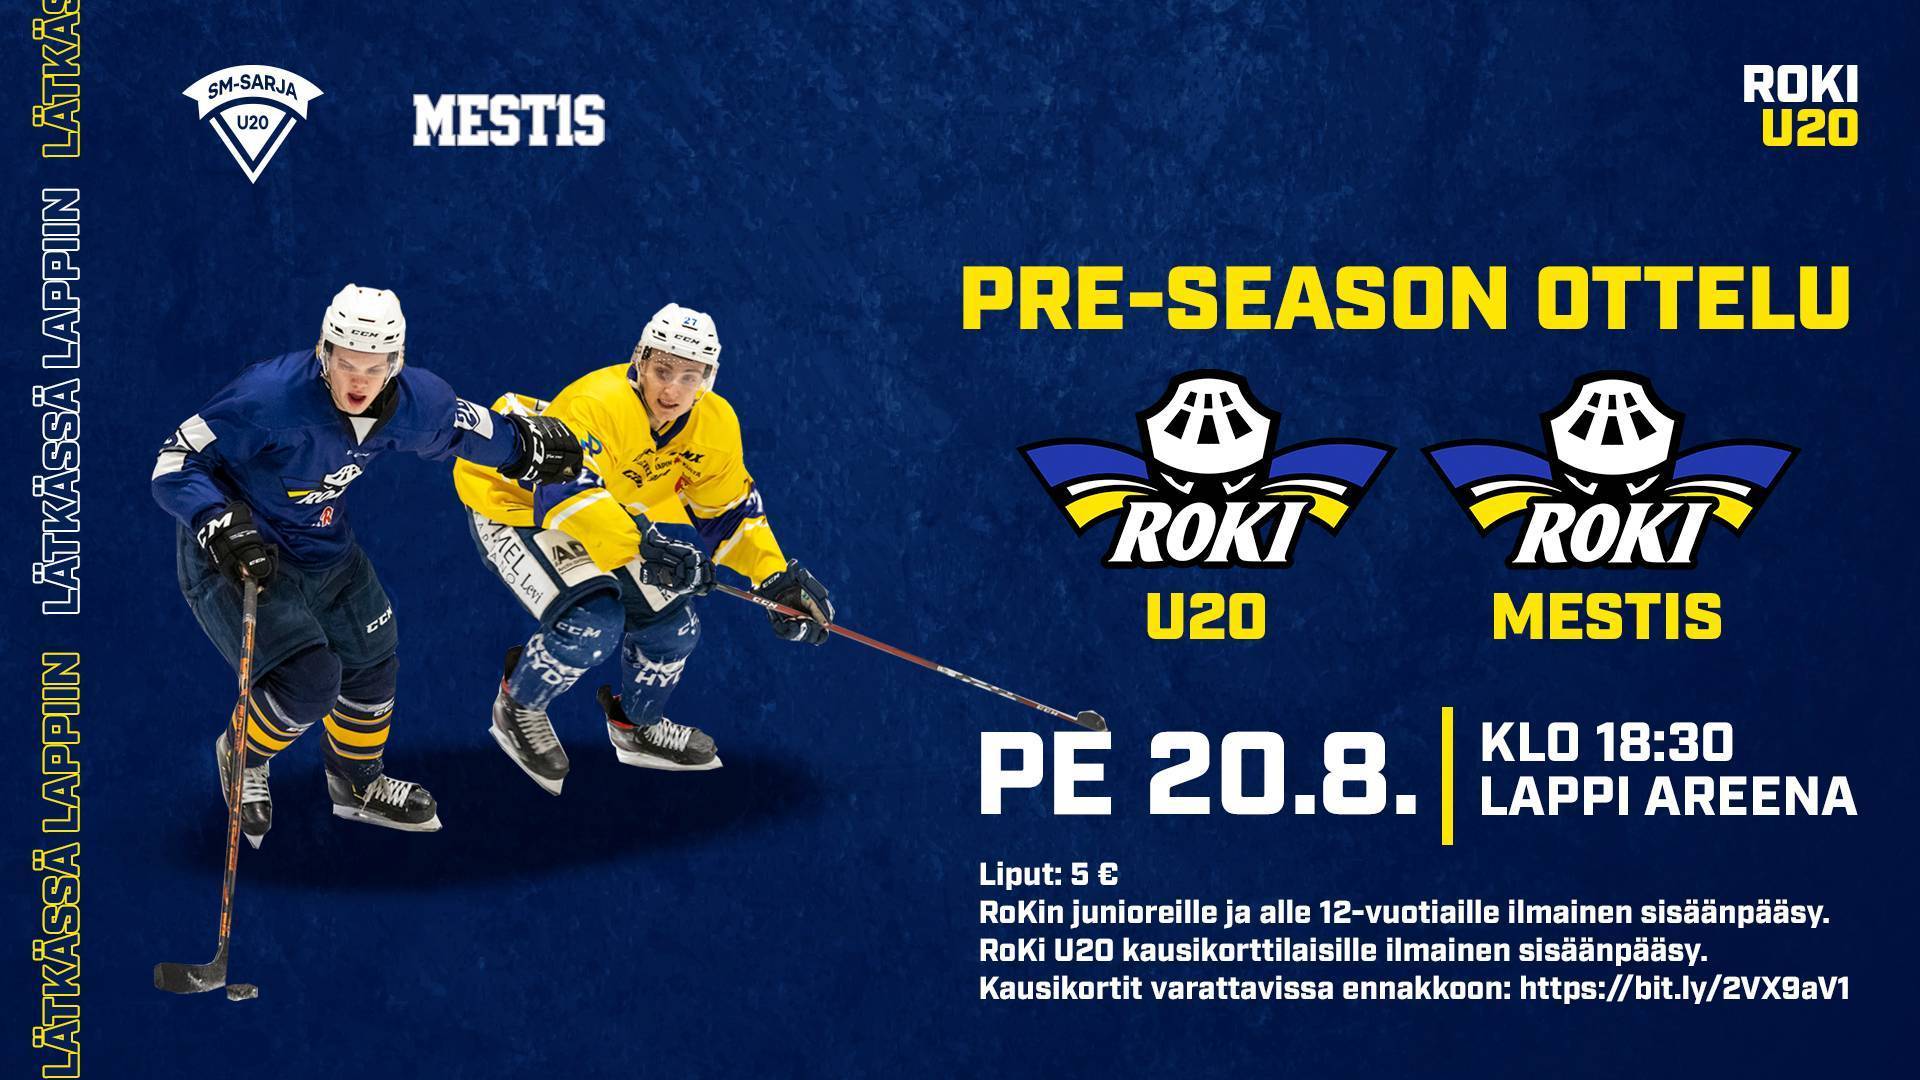 RoKi U20 kohtaa RoKin edustusjoukkueen perjantain pre-season ottelussa Lappi Areenalla 